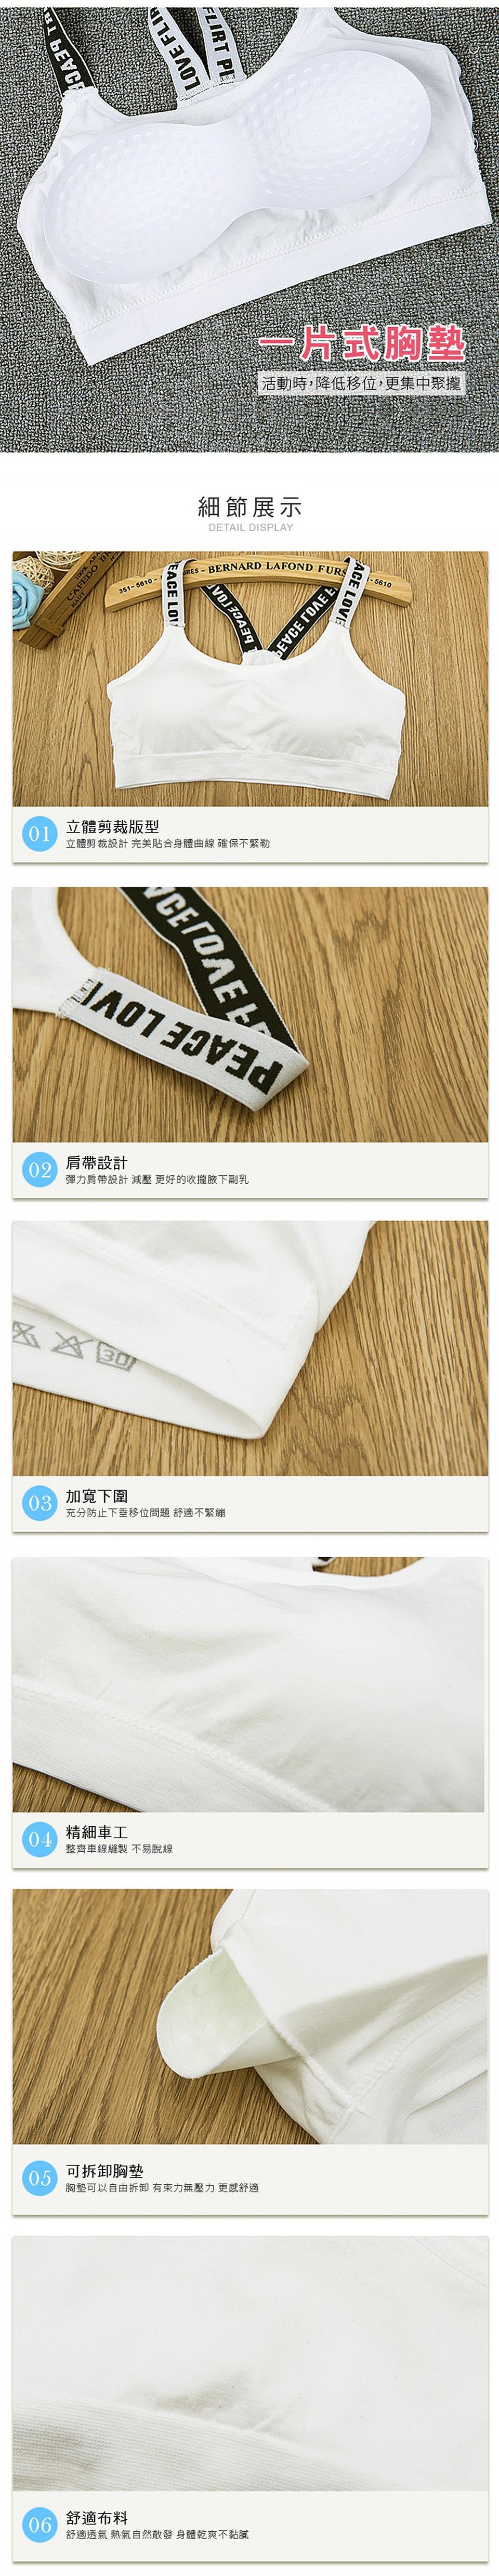 【JS嚴選】時尚美背字母肩帶動塑運動內衣(超值4件)